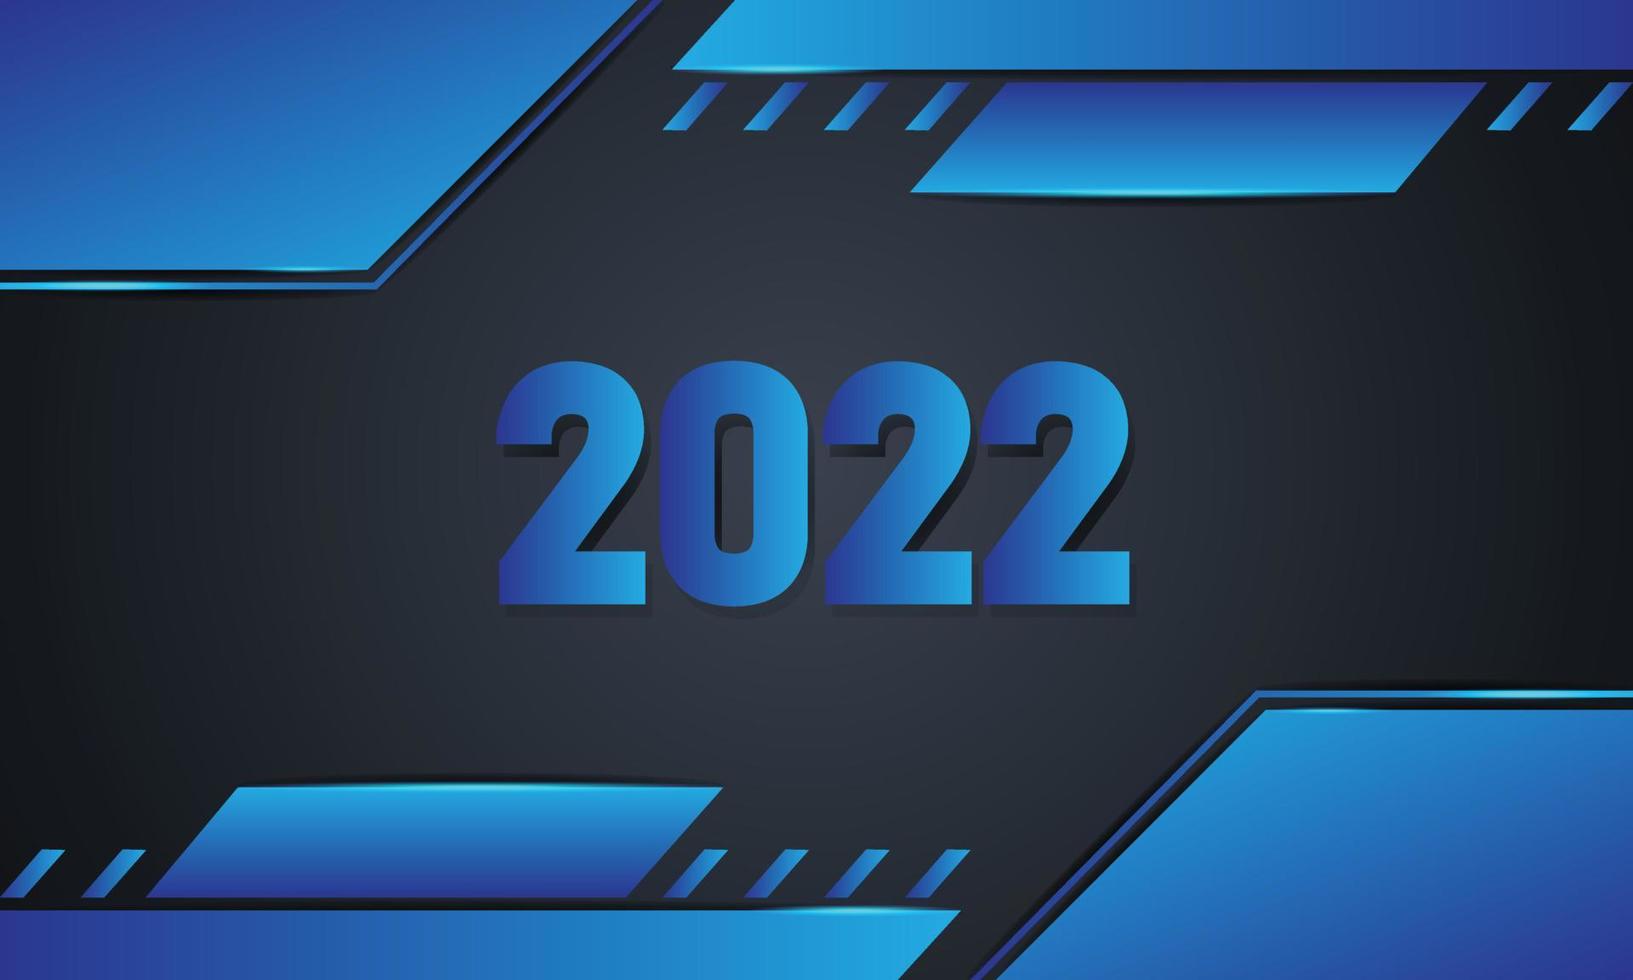 Modelo de vetor de design de plano de fundo 2022